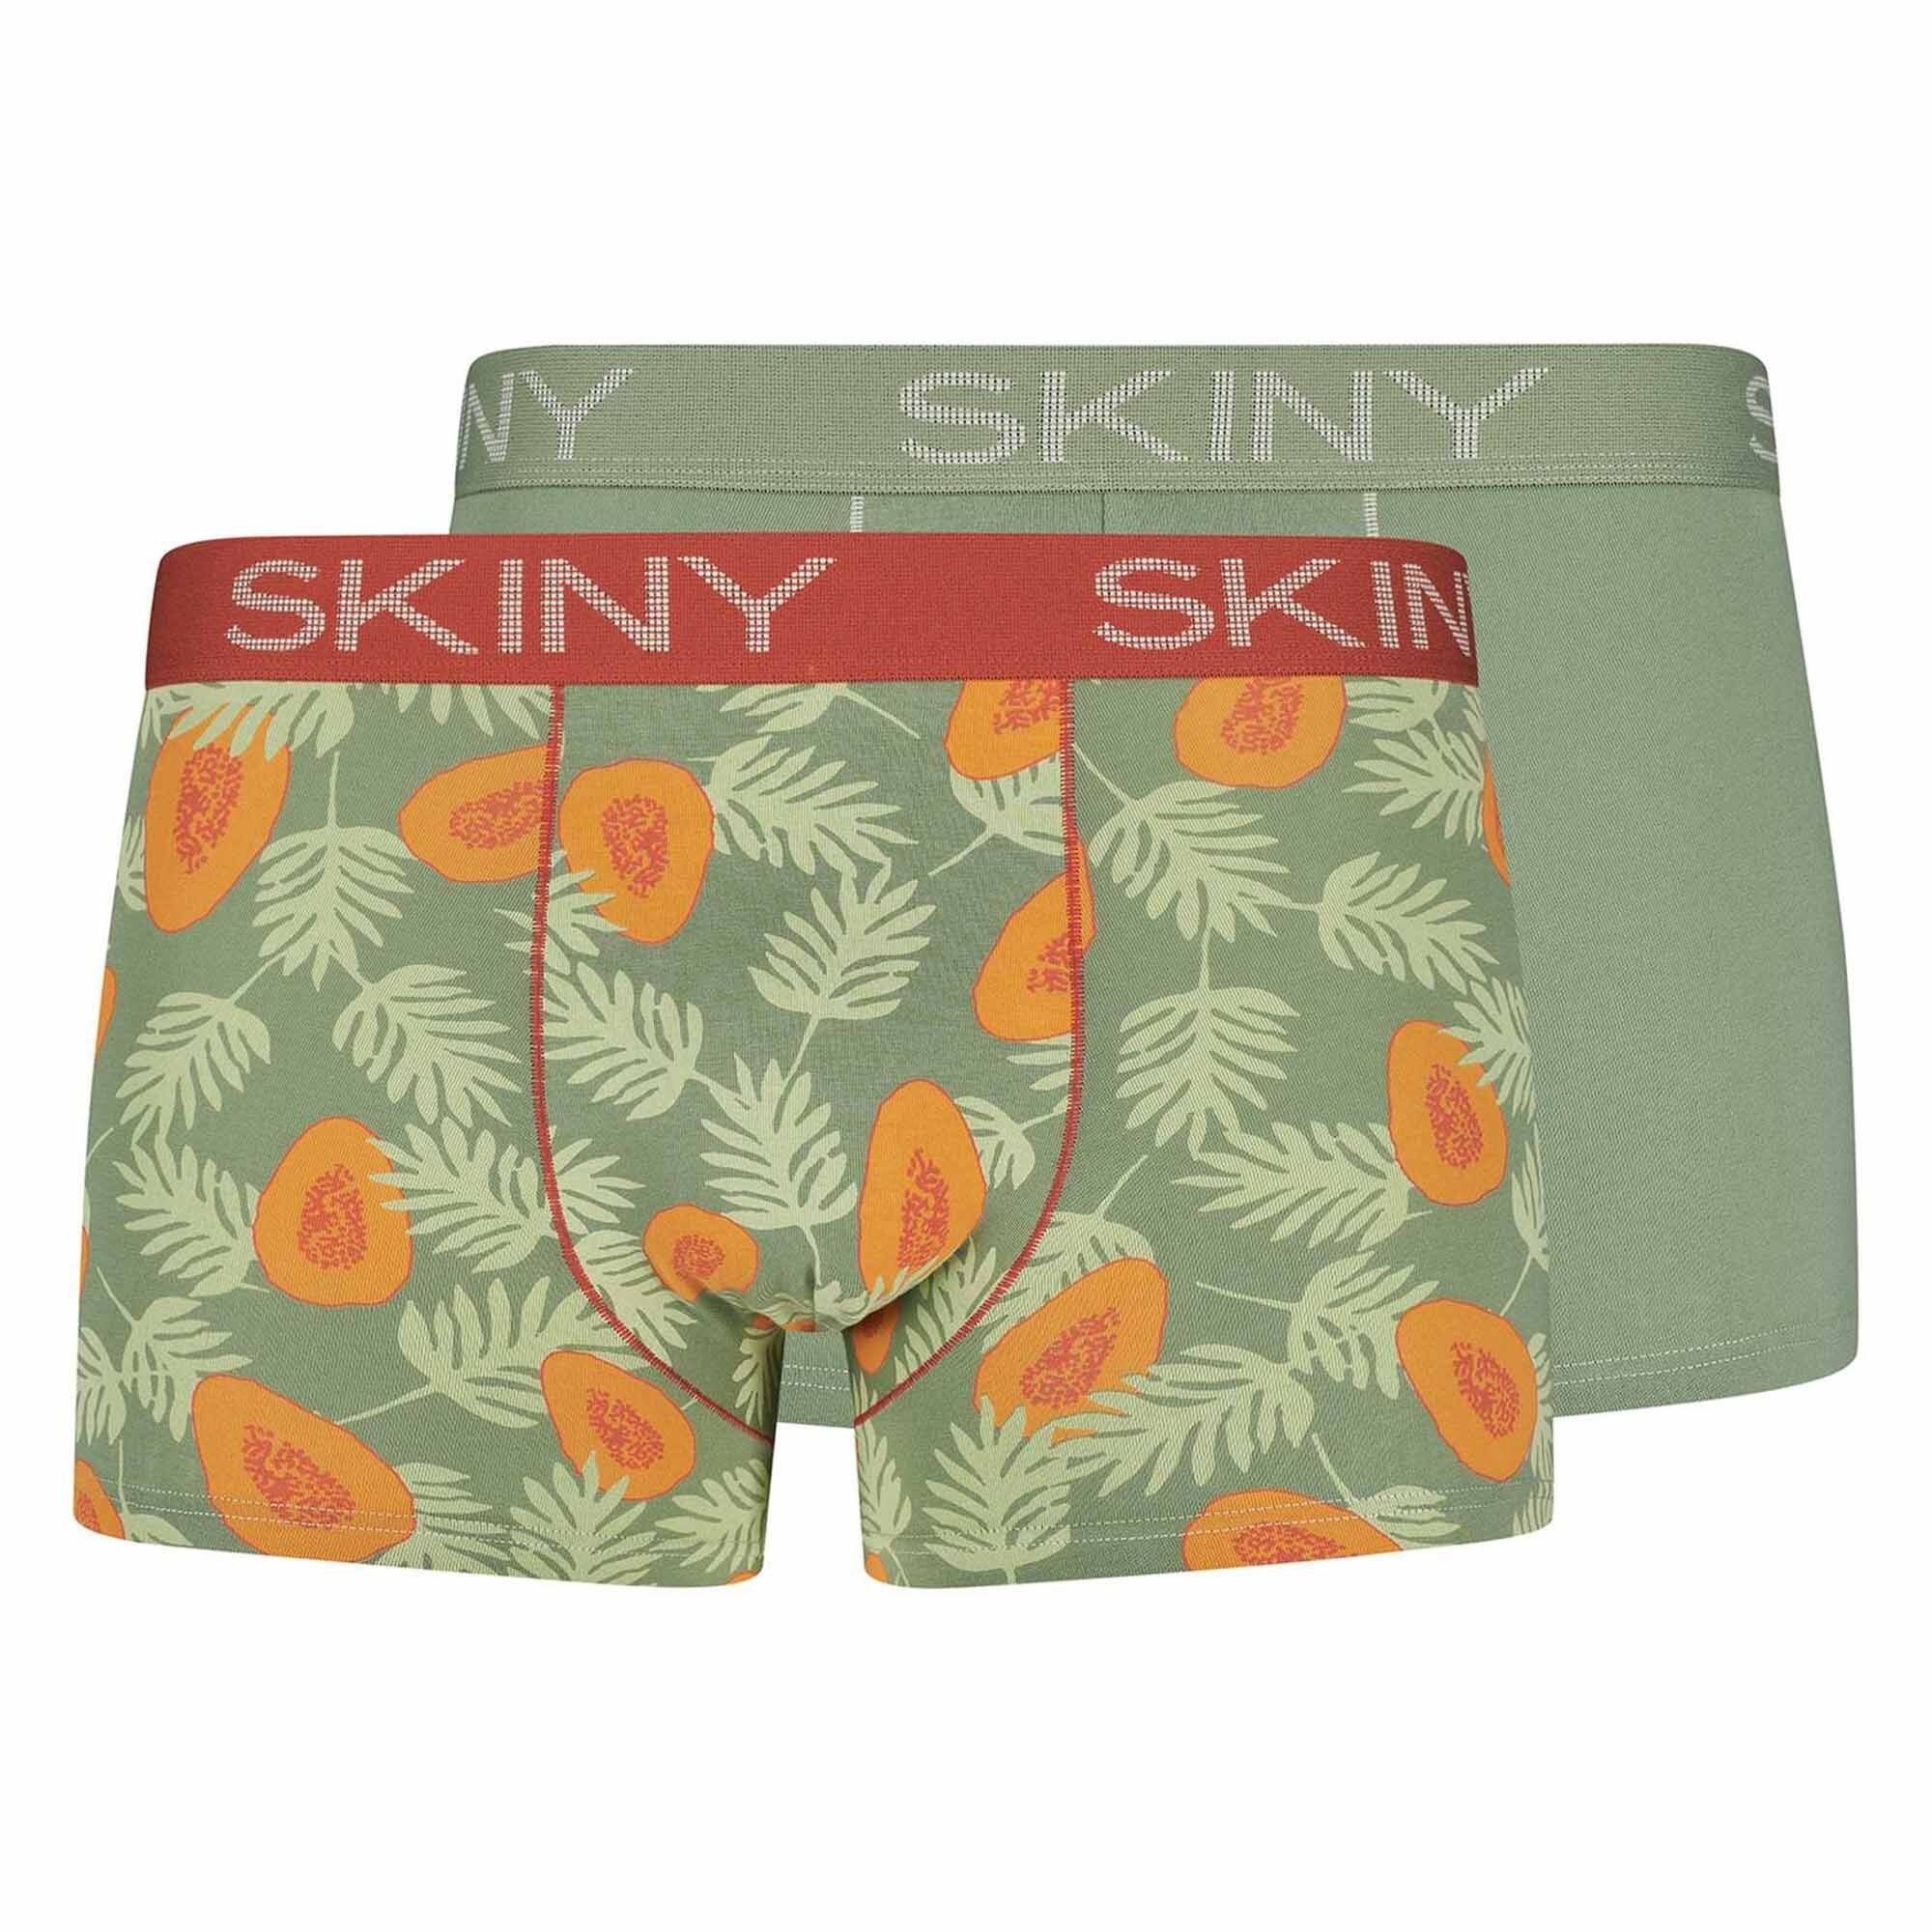 Skiny Boxer Pants Pack Trunks, Herren Boxer - 2er Grün/Papaya Short,